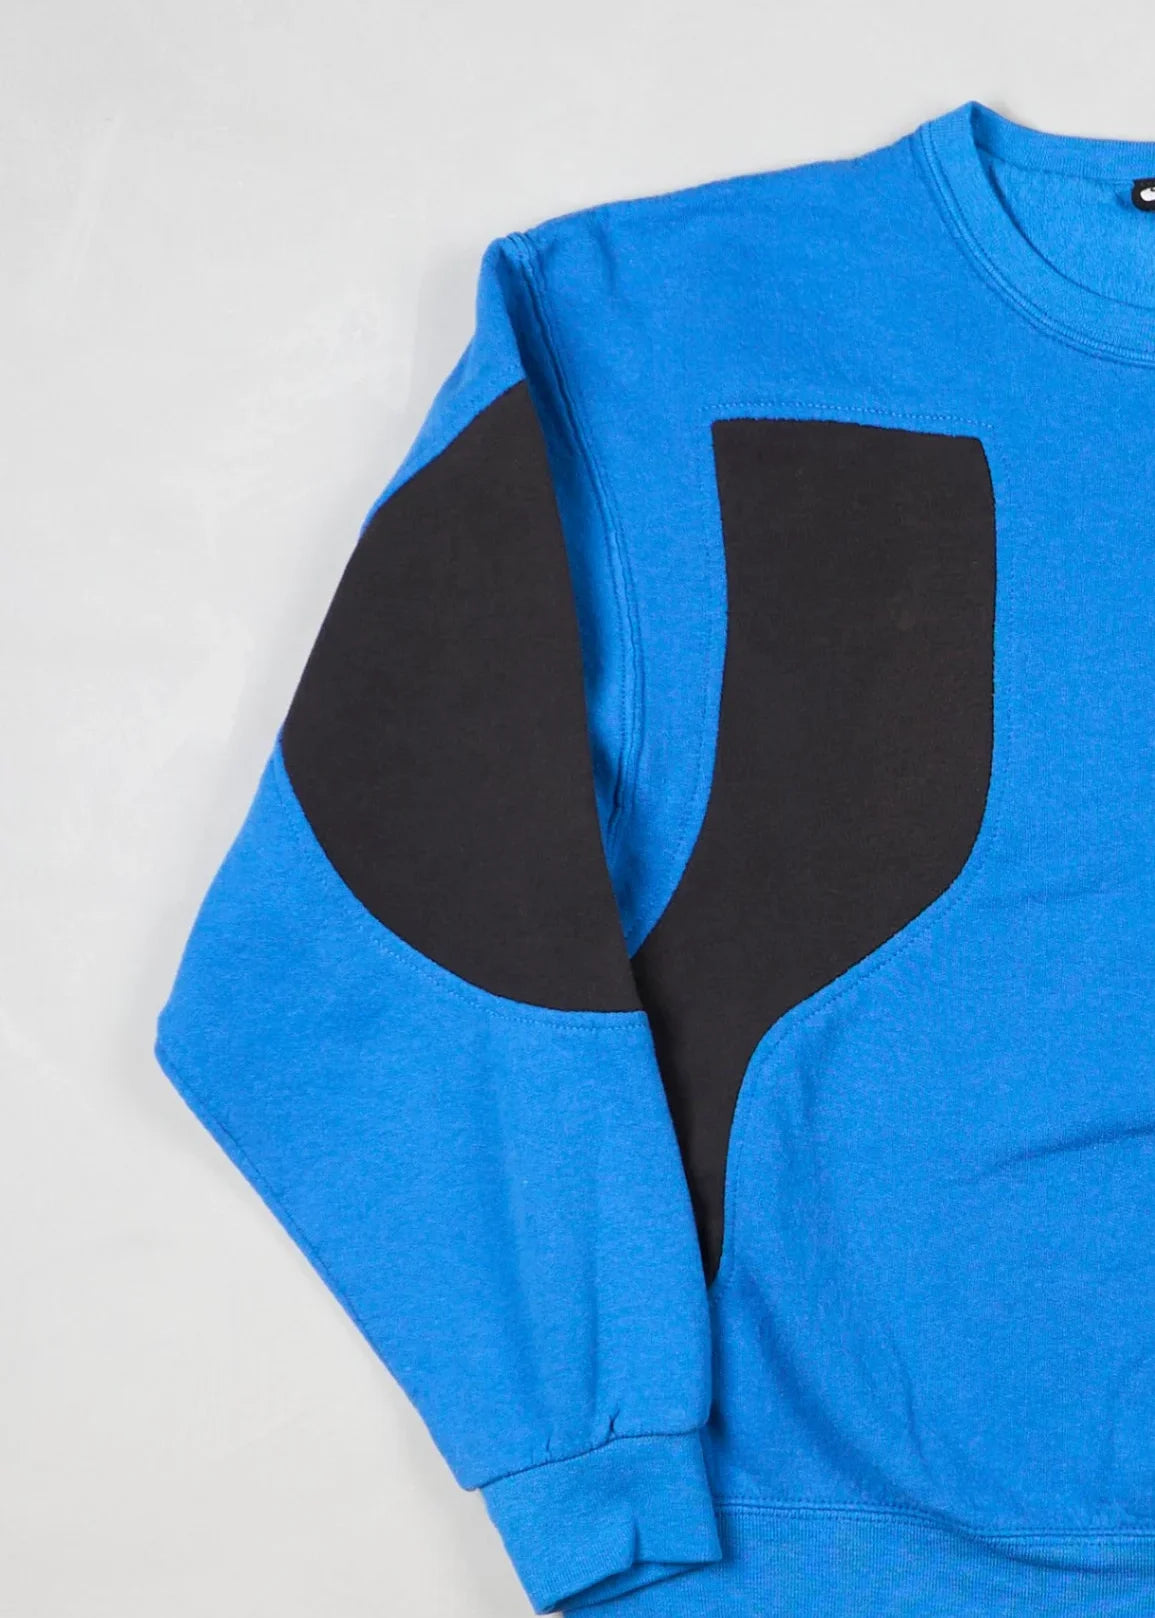 Nike - Sweatshirt (M) Left